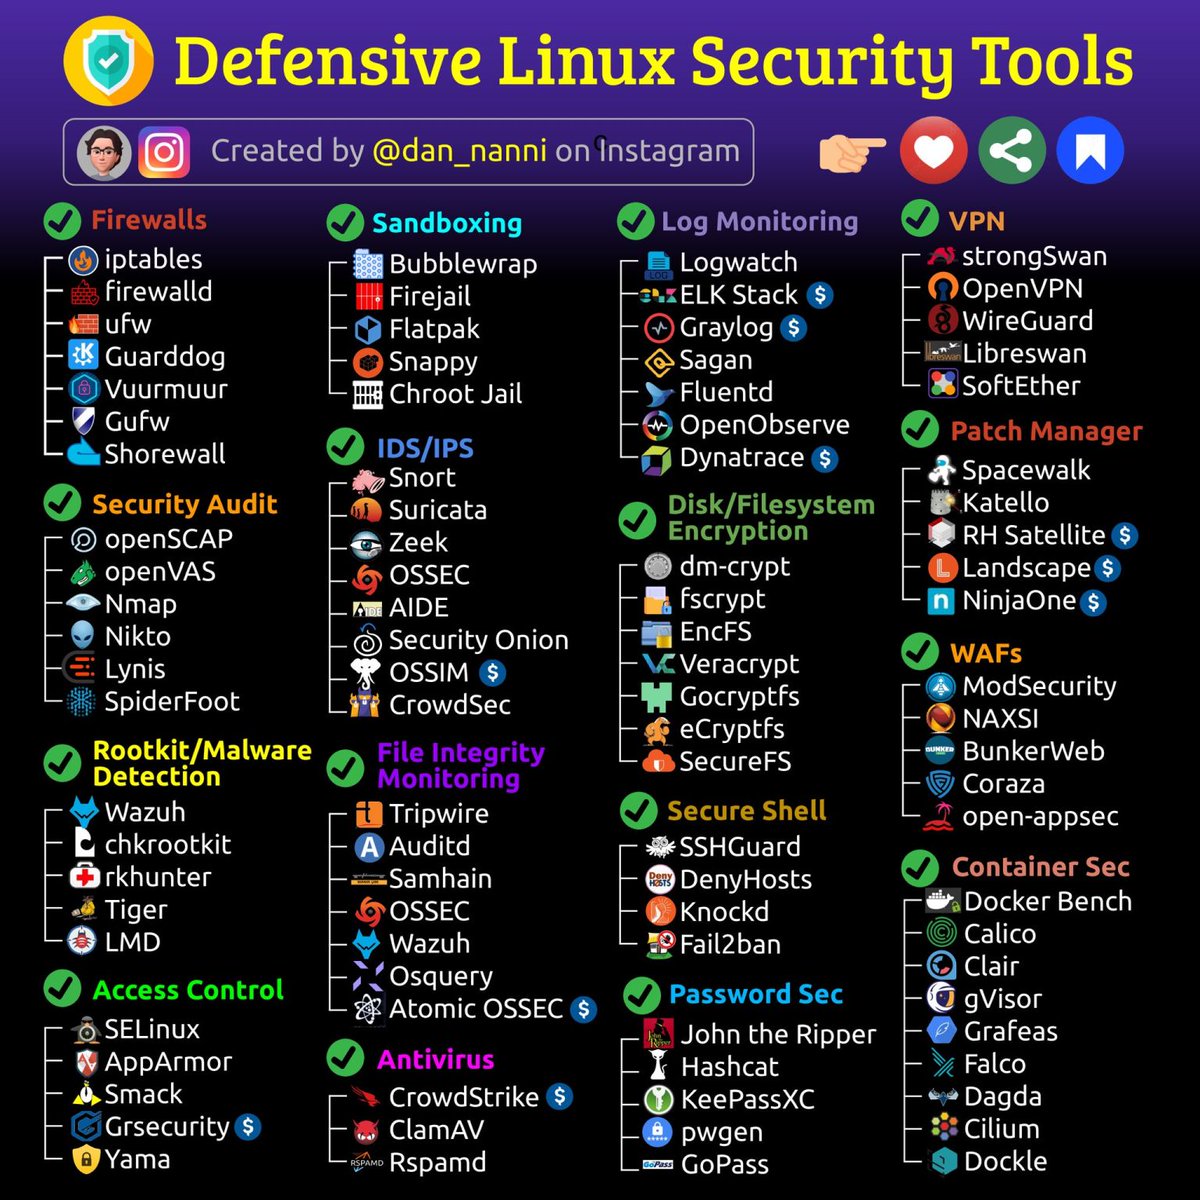 Defensive Linux Security Tools

#infosec #cybersecurity #pentesting #redteam #informationsecurity #CyberSec #networking #networksecurity #infosecurity #cyberattacks #security #oscp #cybersecurityawareness #bugbounty #bugbountytips